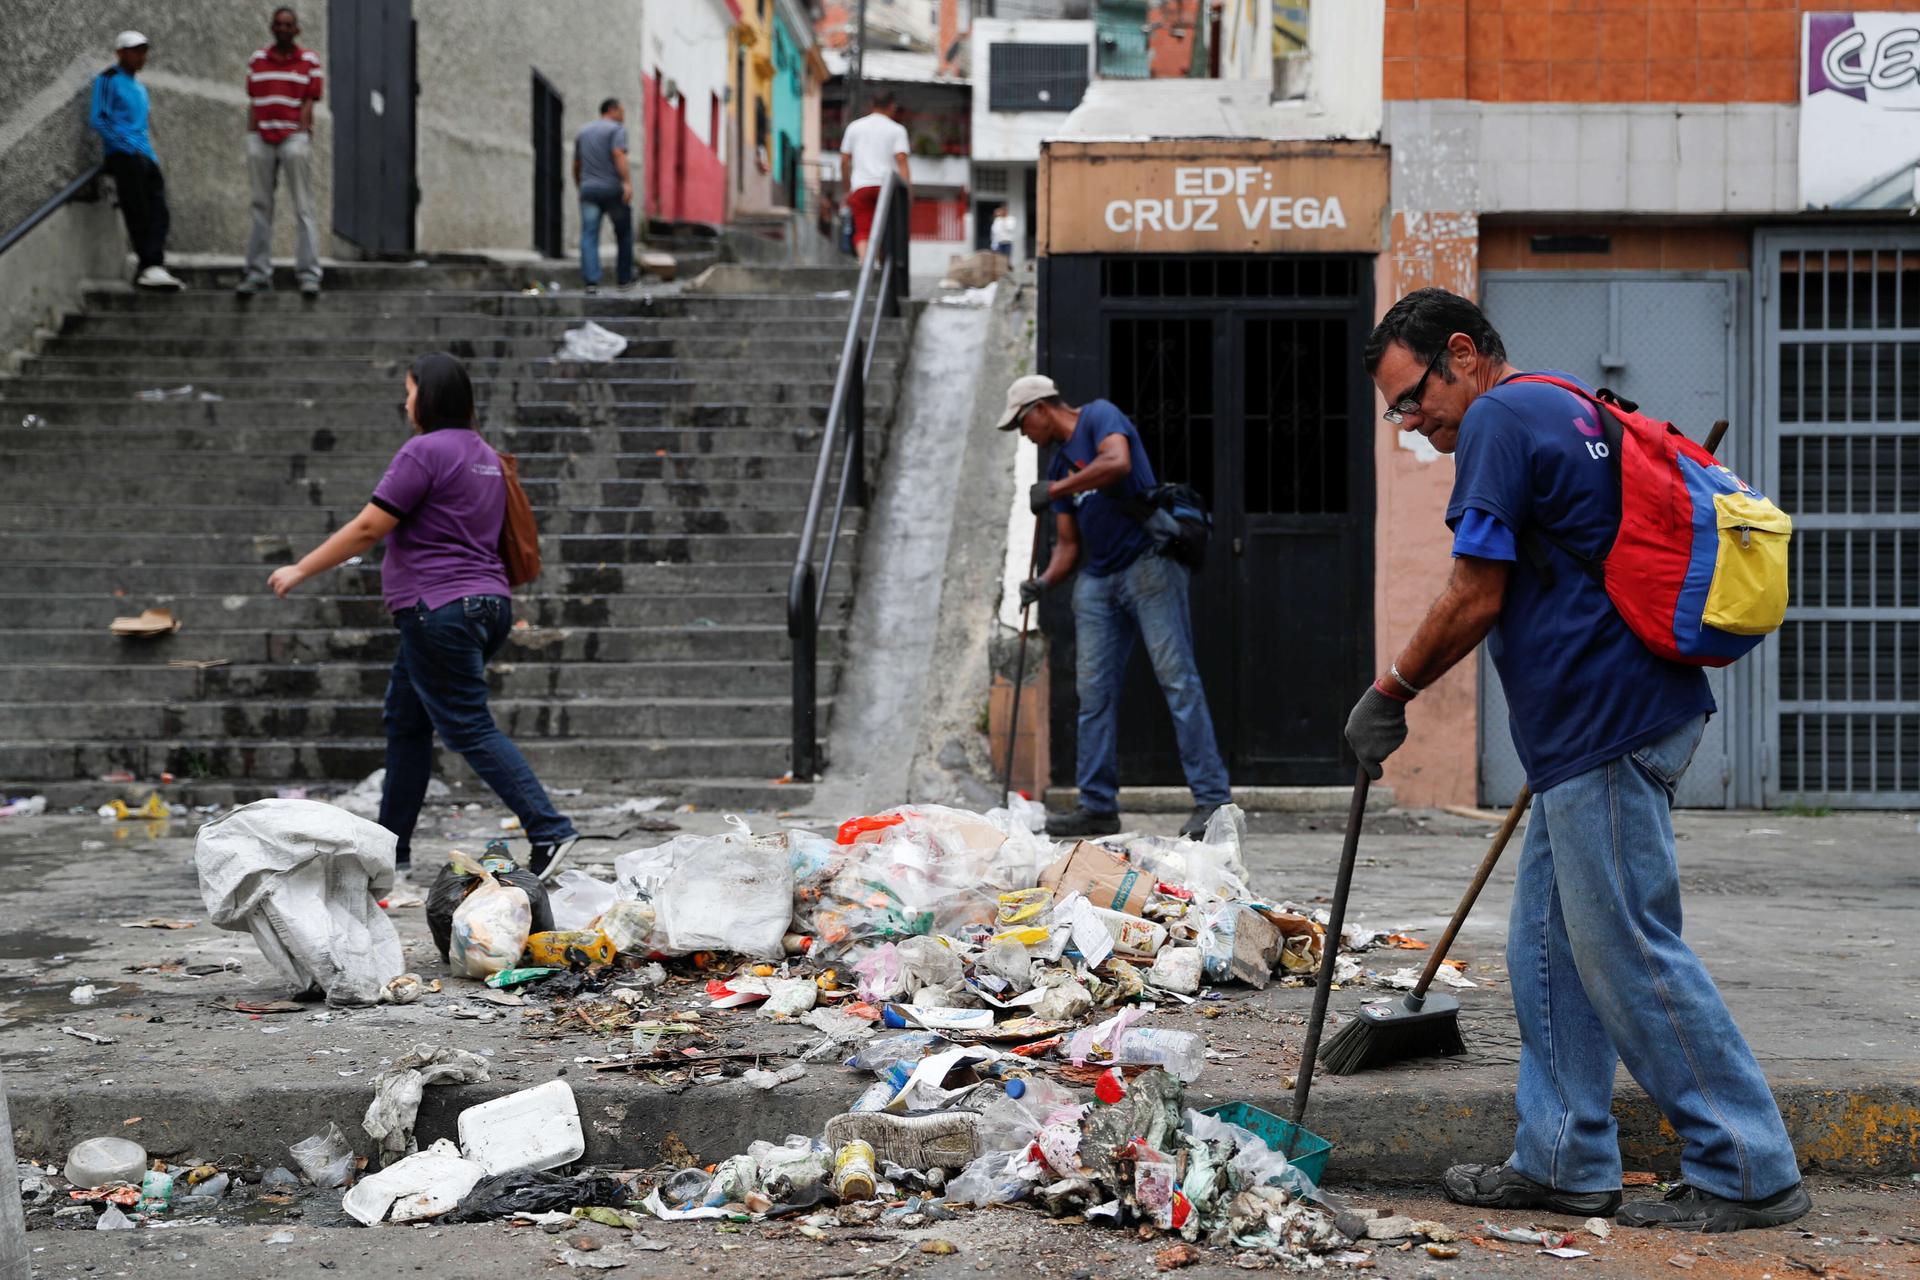 a man sweeps piles of litter